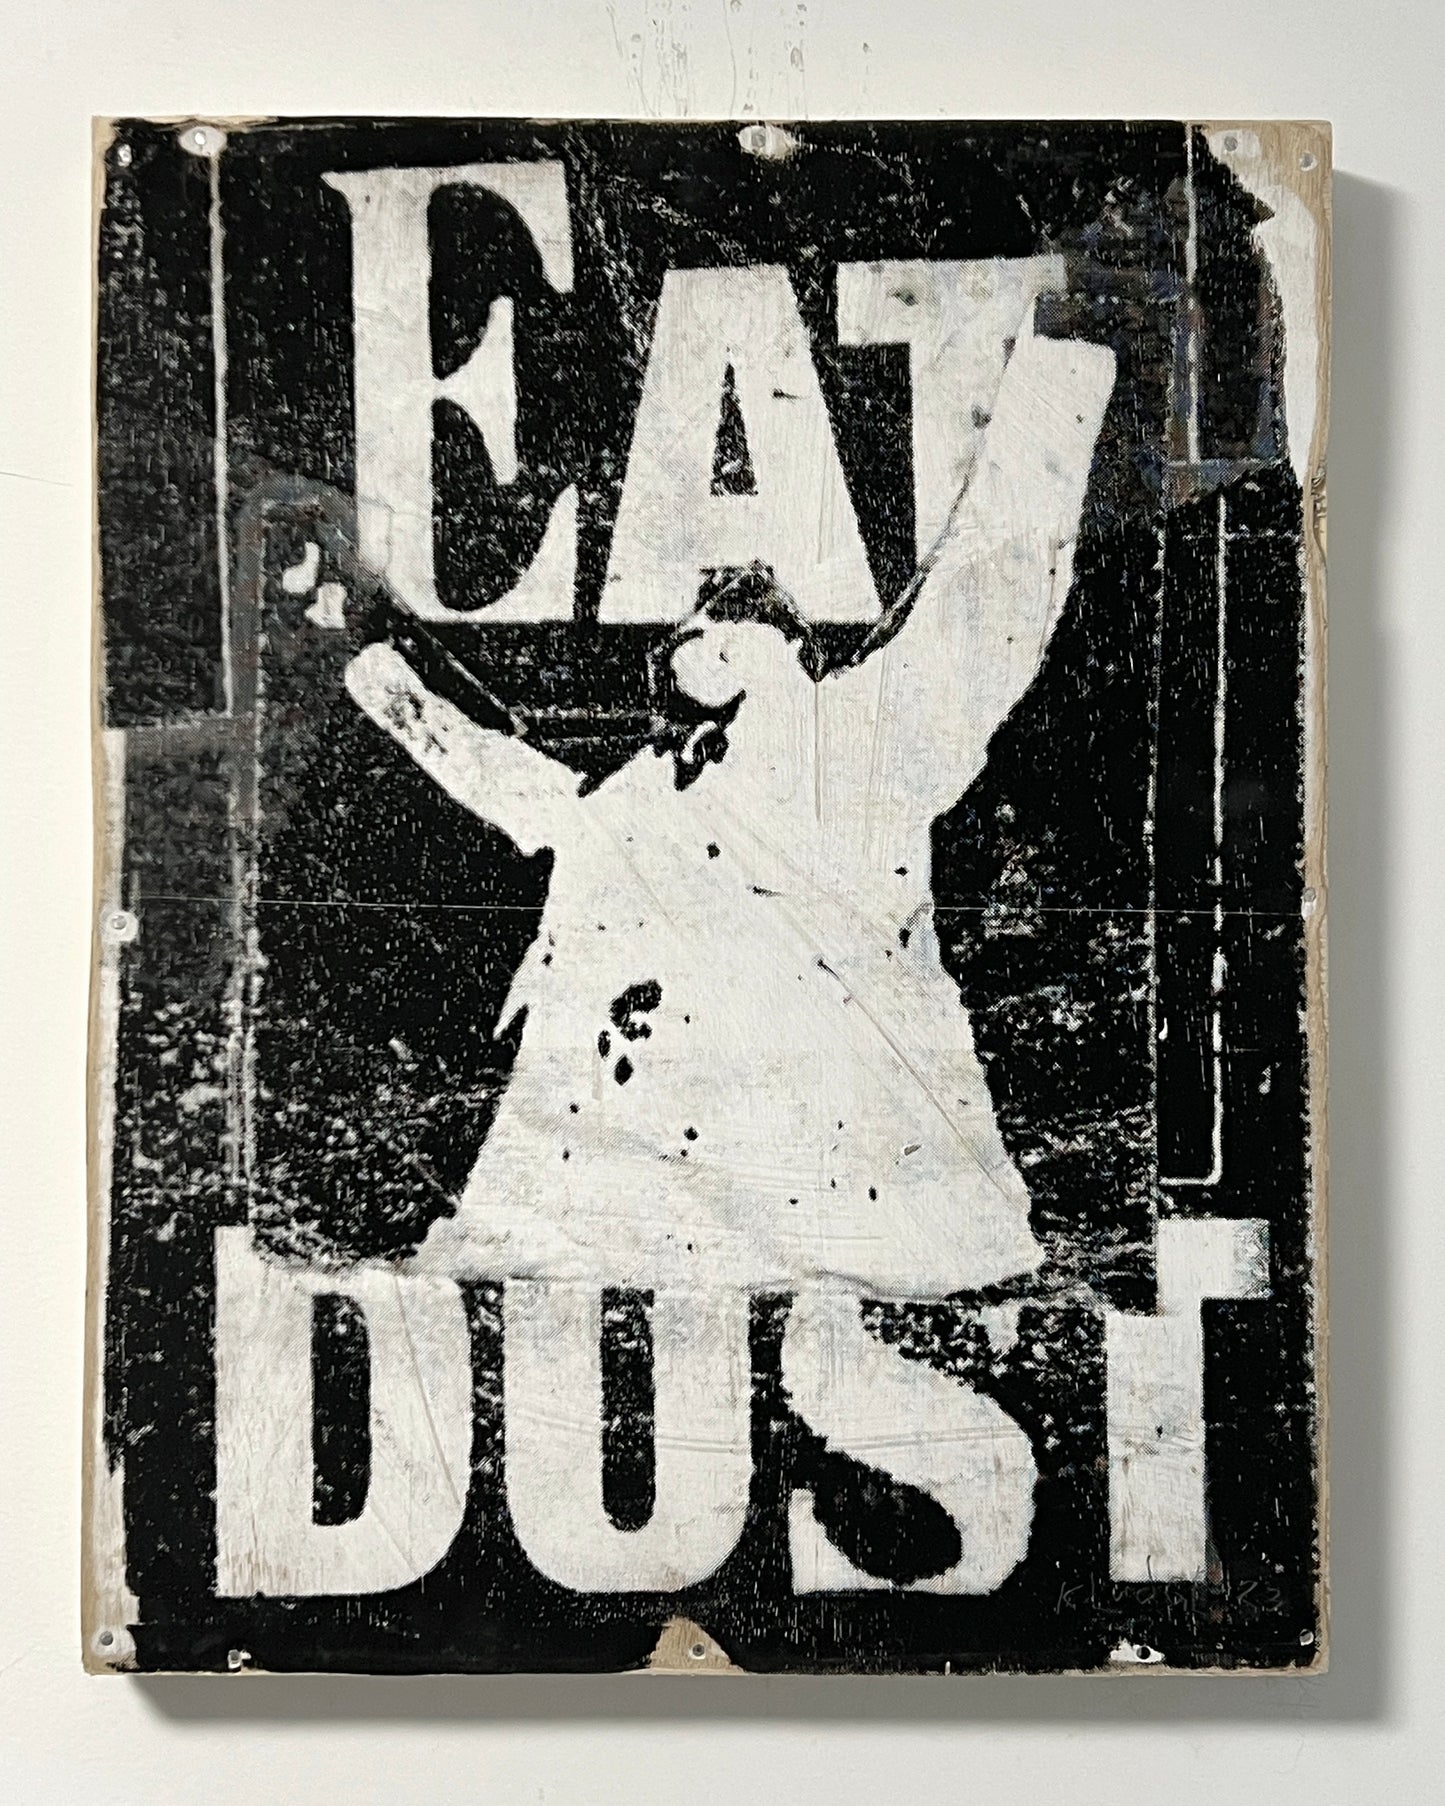 eat dust  - 16"x20"